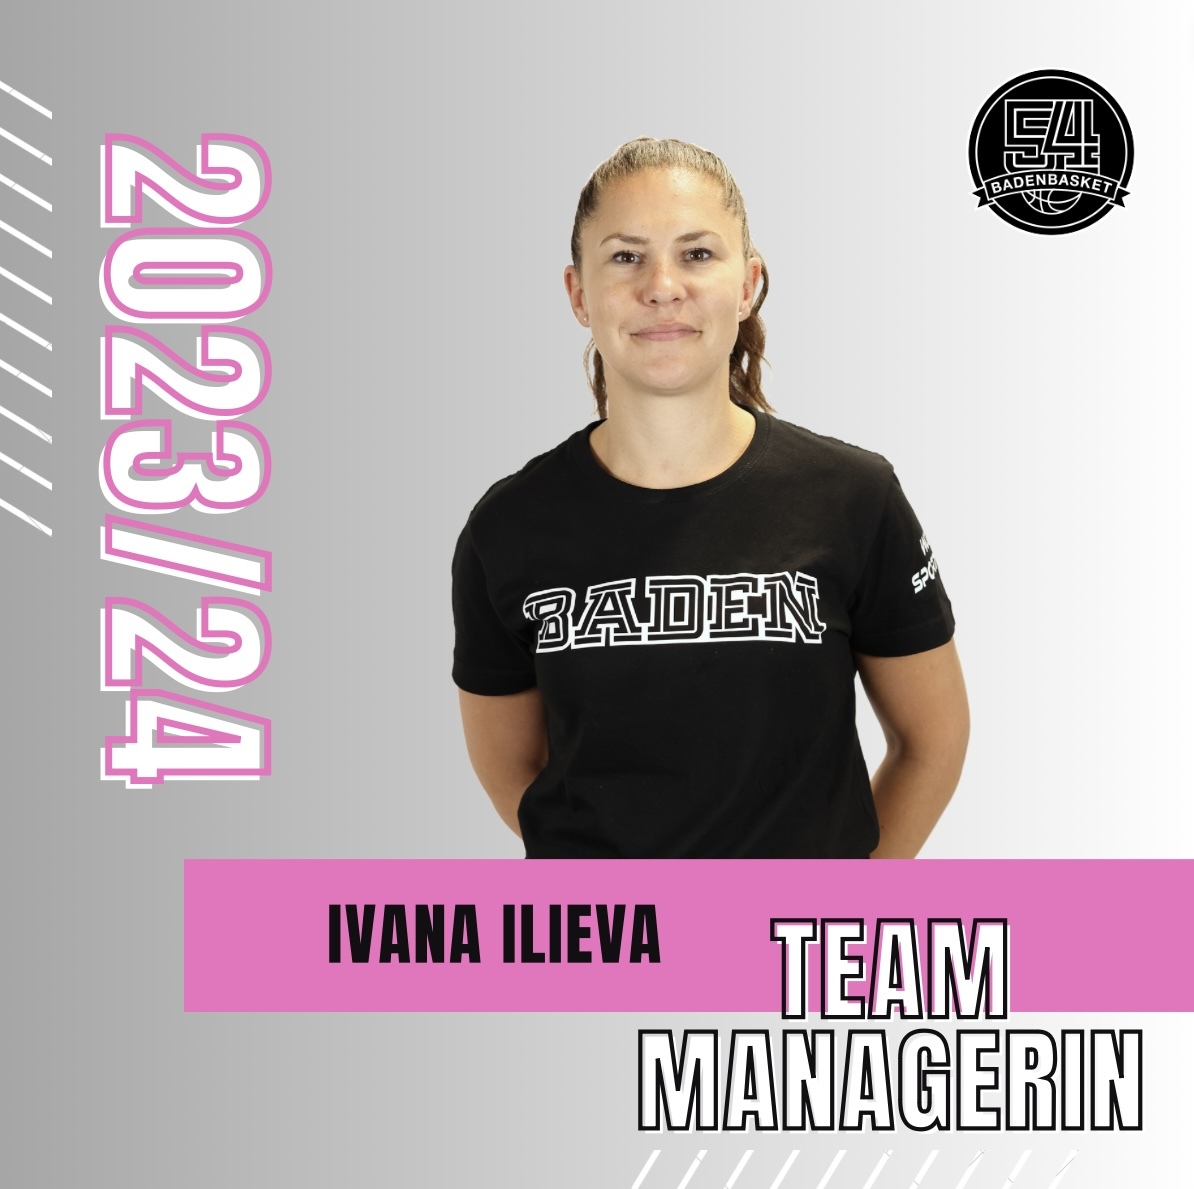 Team-Managerin - Ivana Ilieva